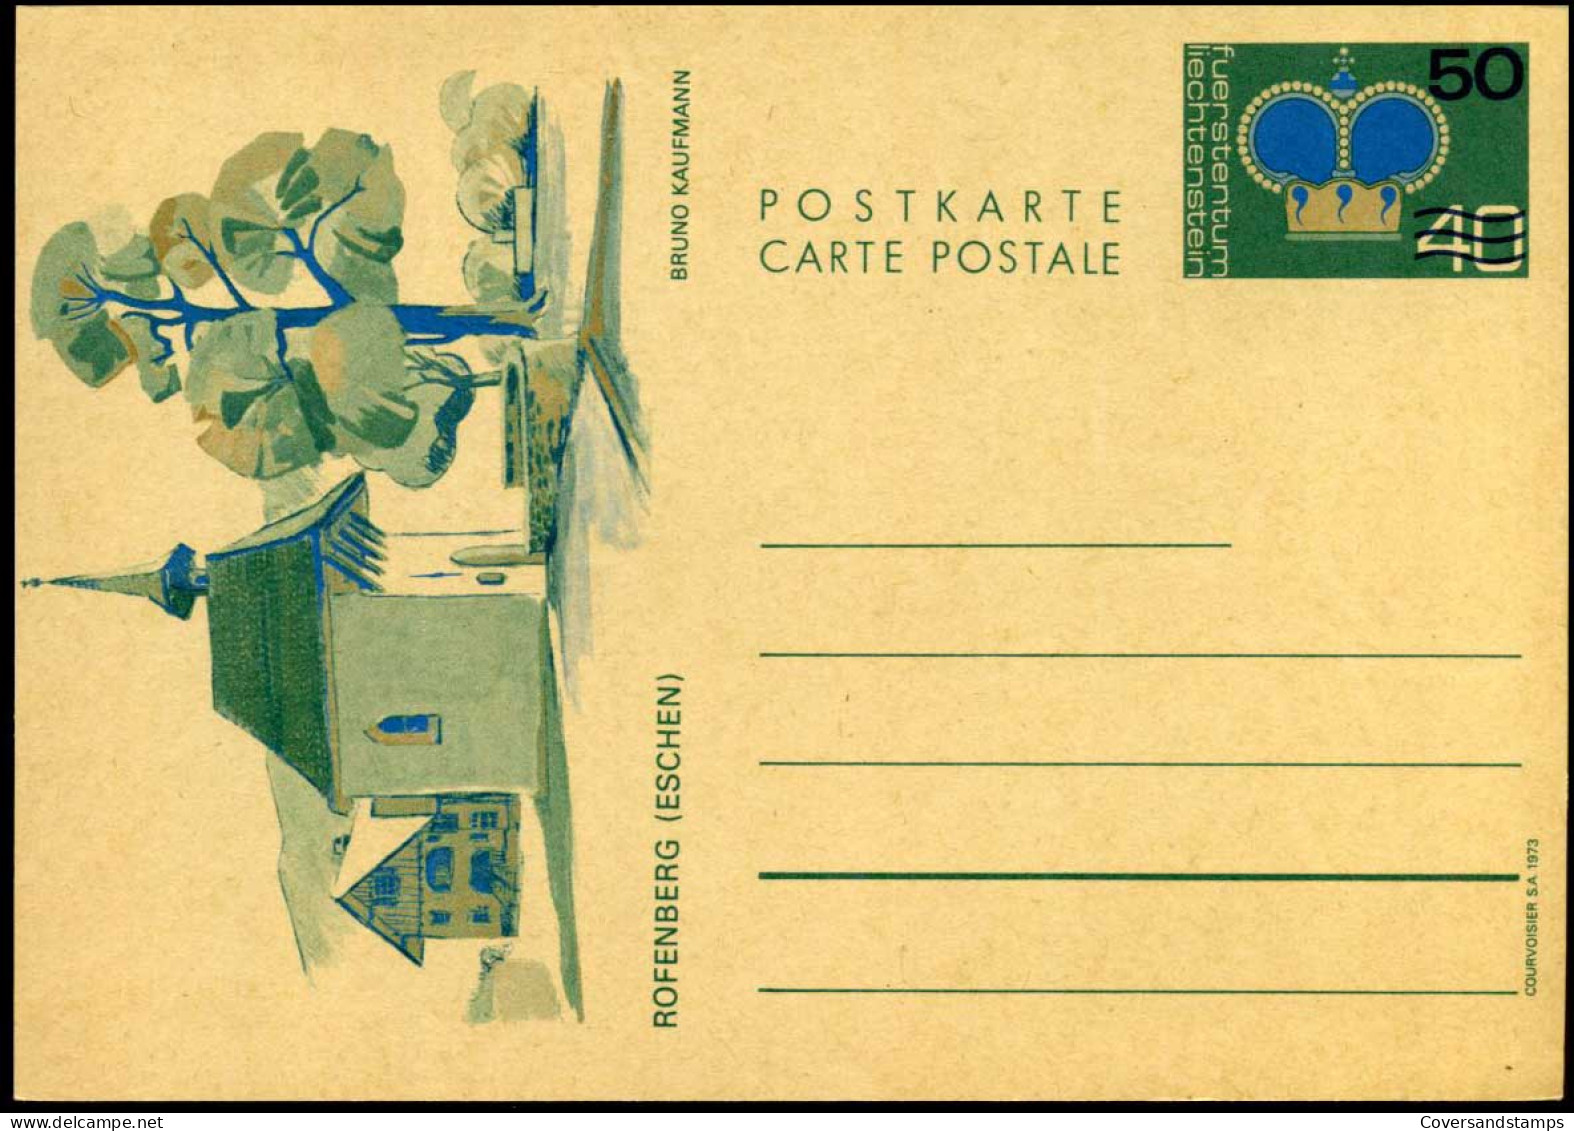 Post Card - Unused - Enteros Postales